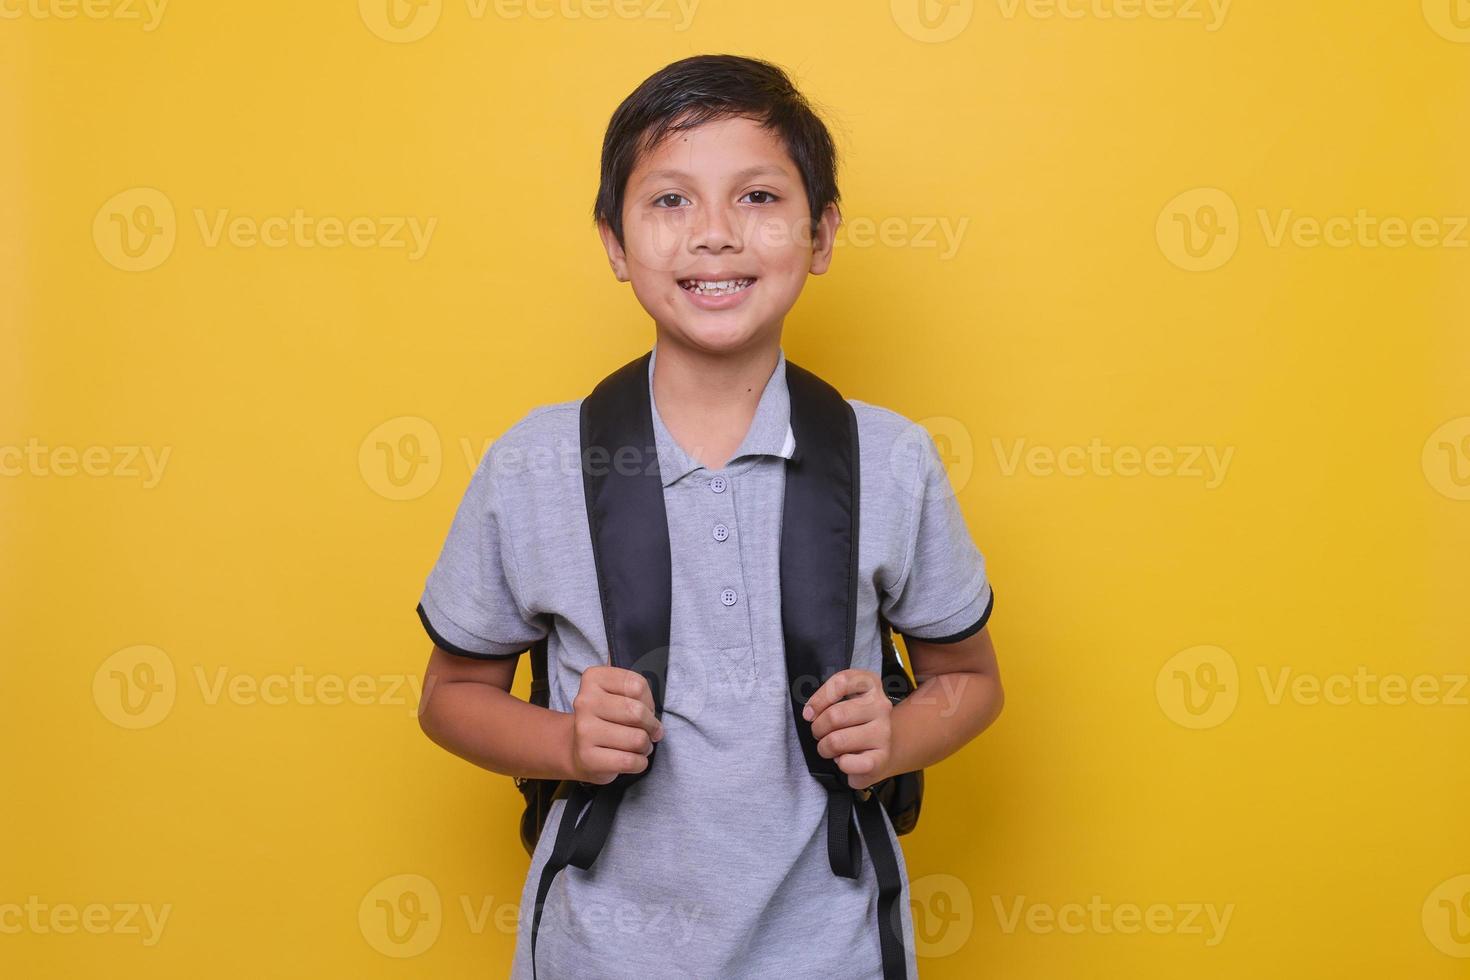 écolier asiatique dans un style décontracté avec sac à dos noir sourit isolé sur fond jaune. concept de retour à l'école. photo